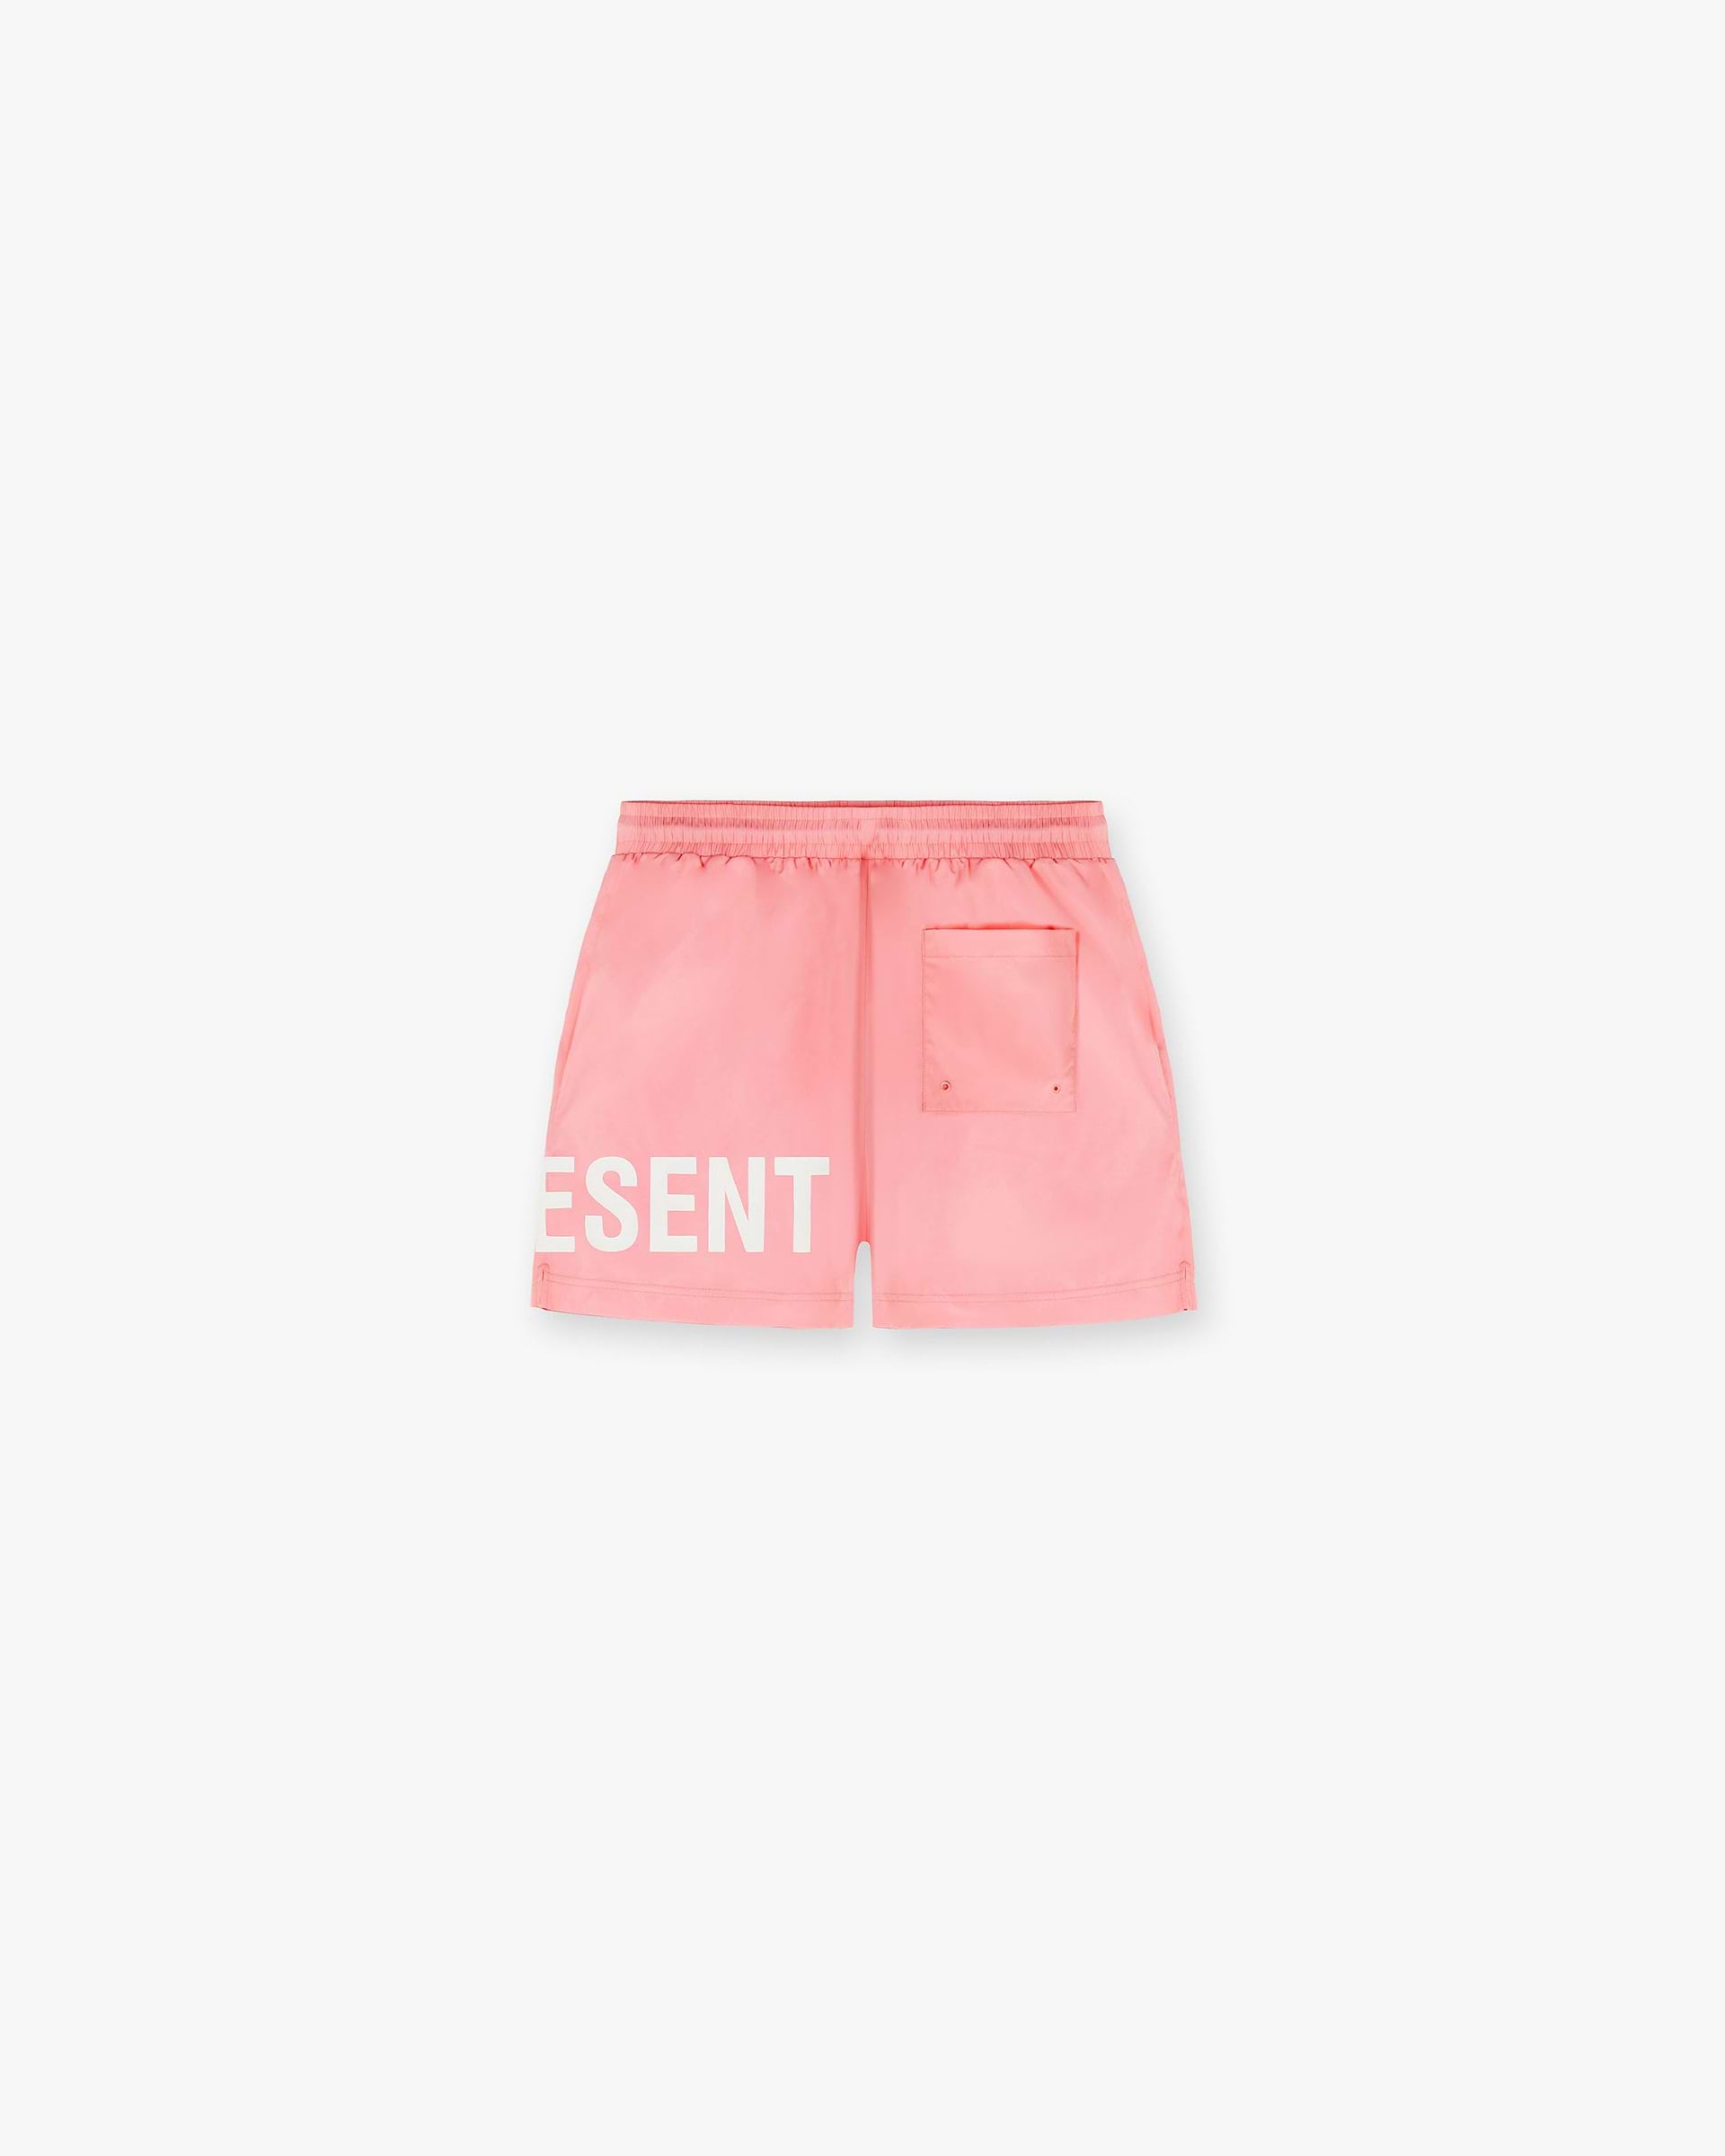 Swim Shorts | Pink Shorts SC23 | Represent Clo